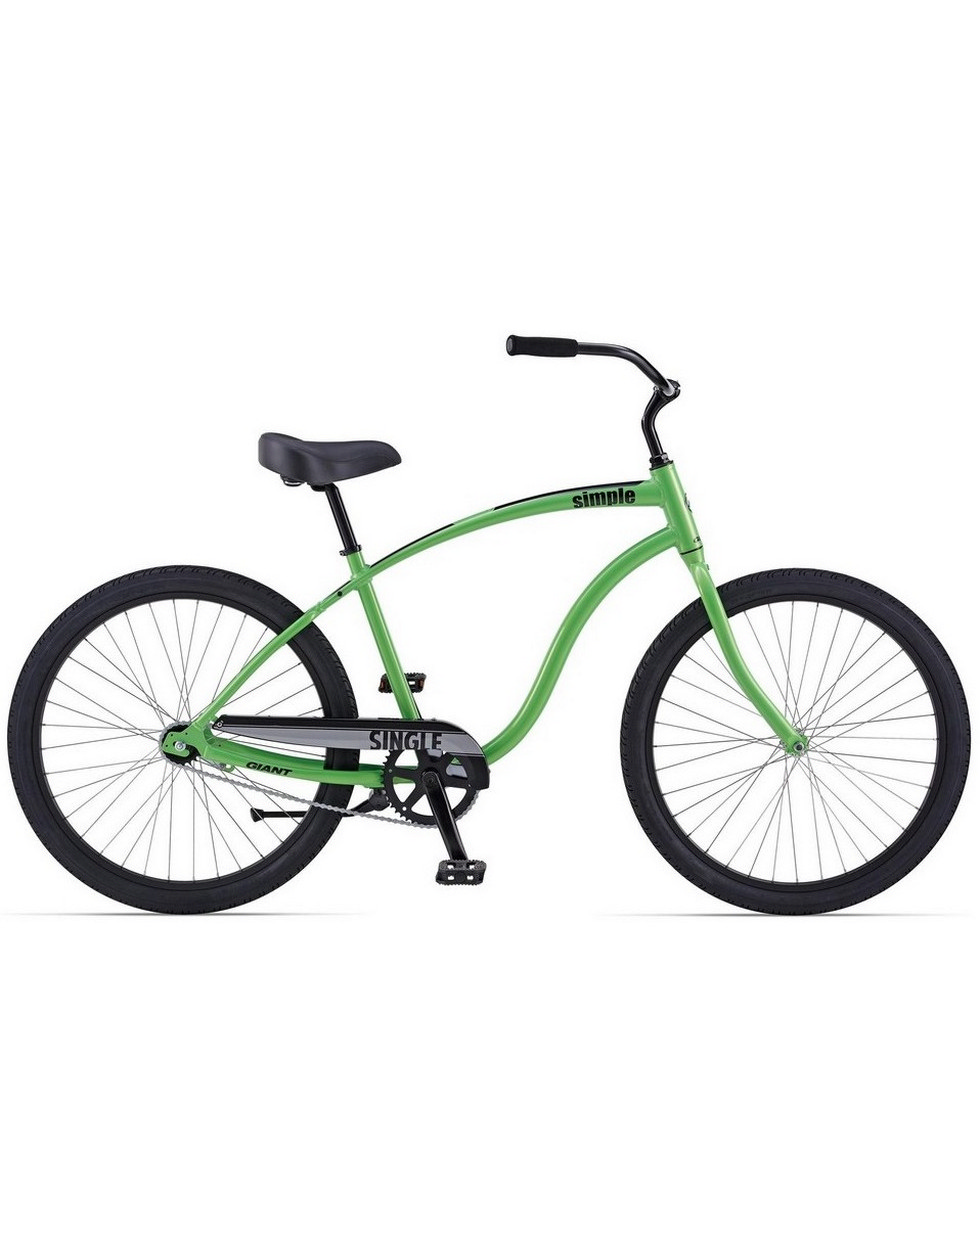 GIANT Велосипед SIMPLE SINGLE 26" 2014 Артикул: 4002192